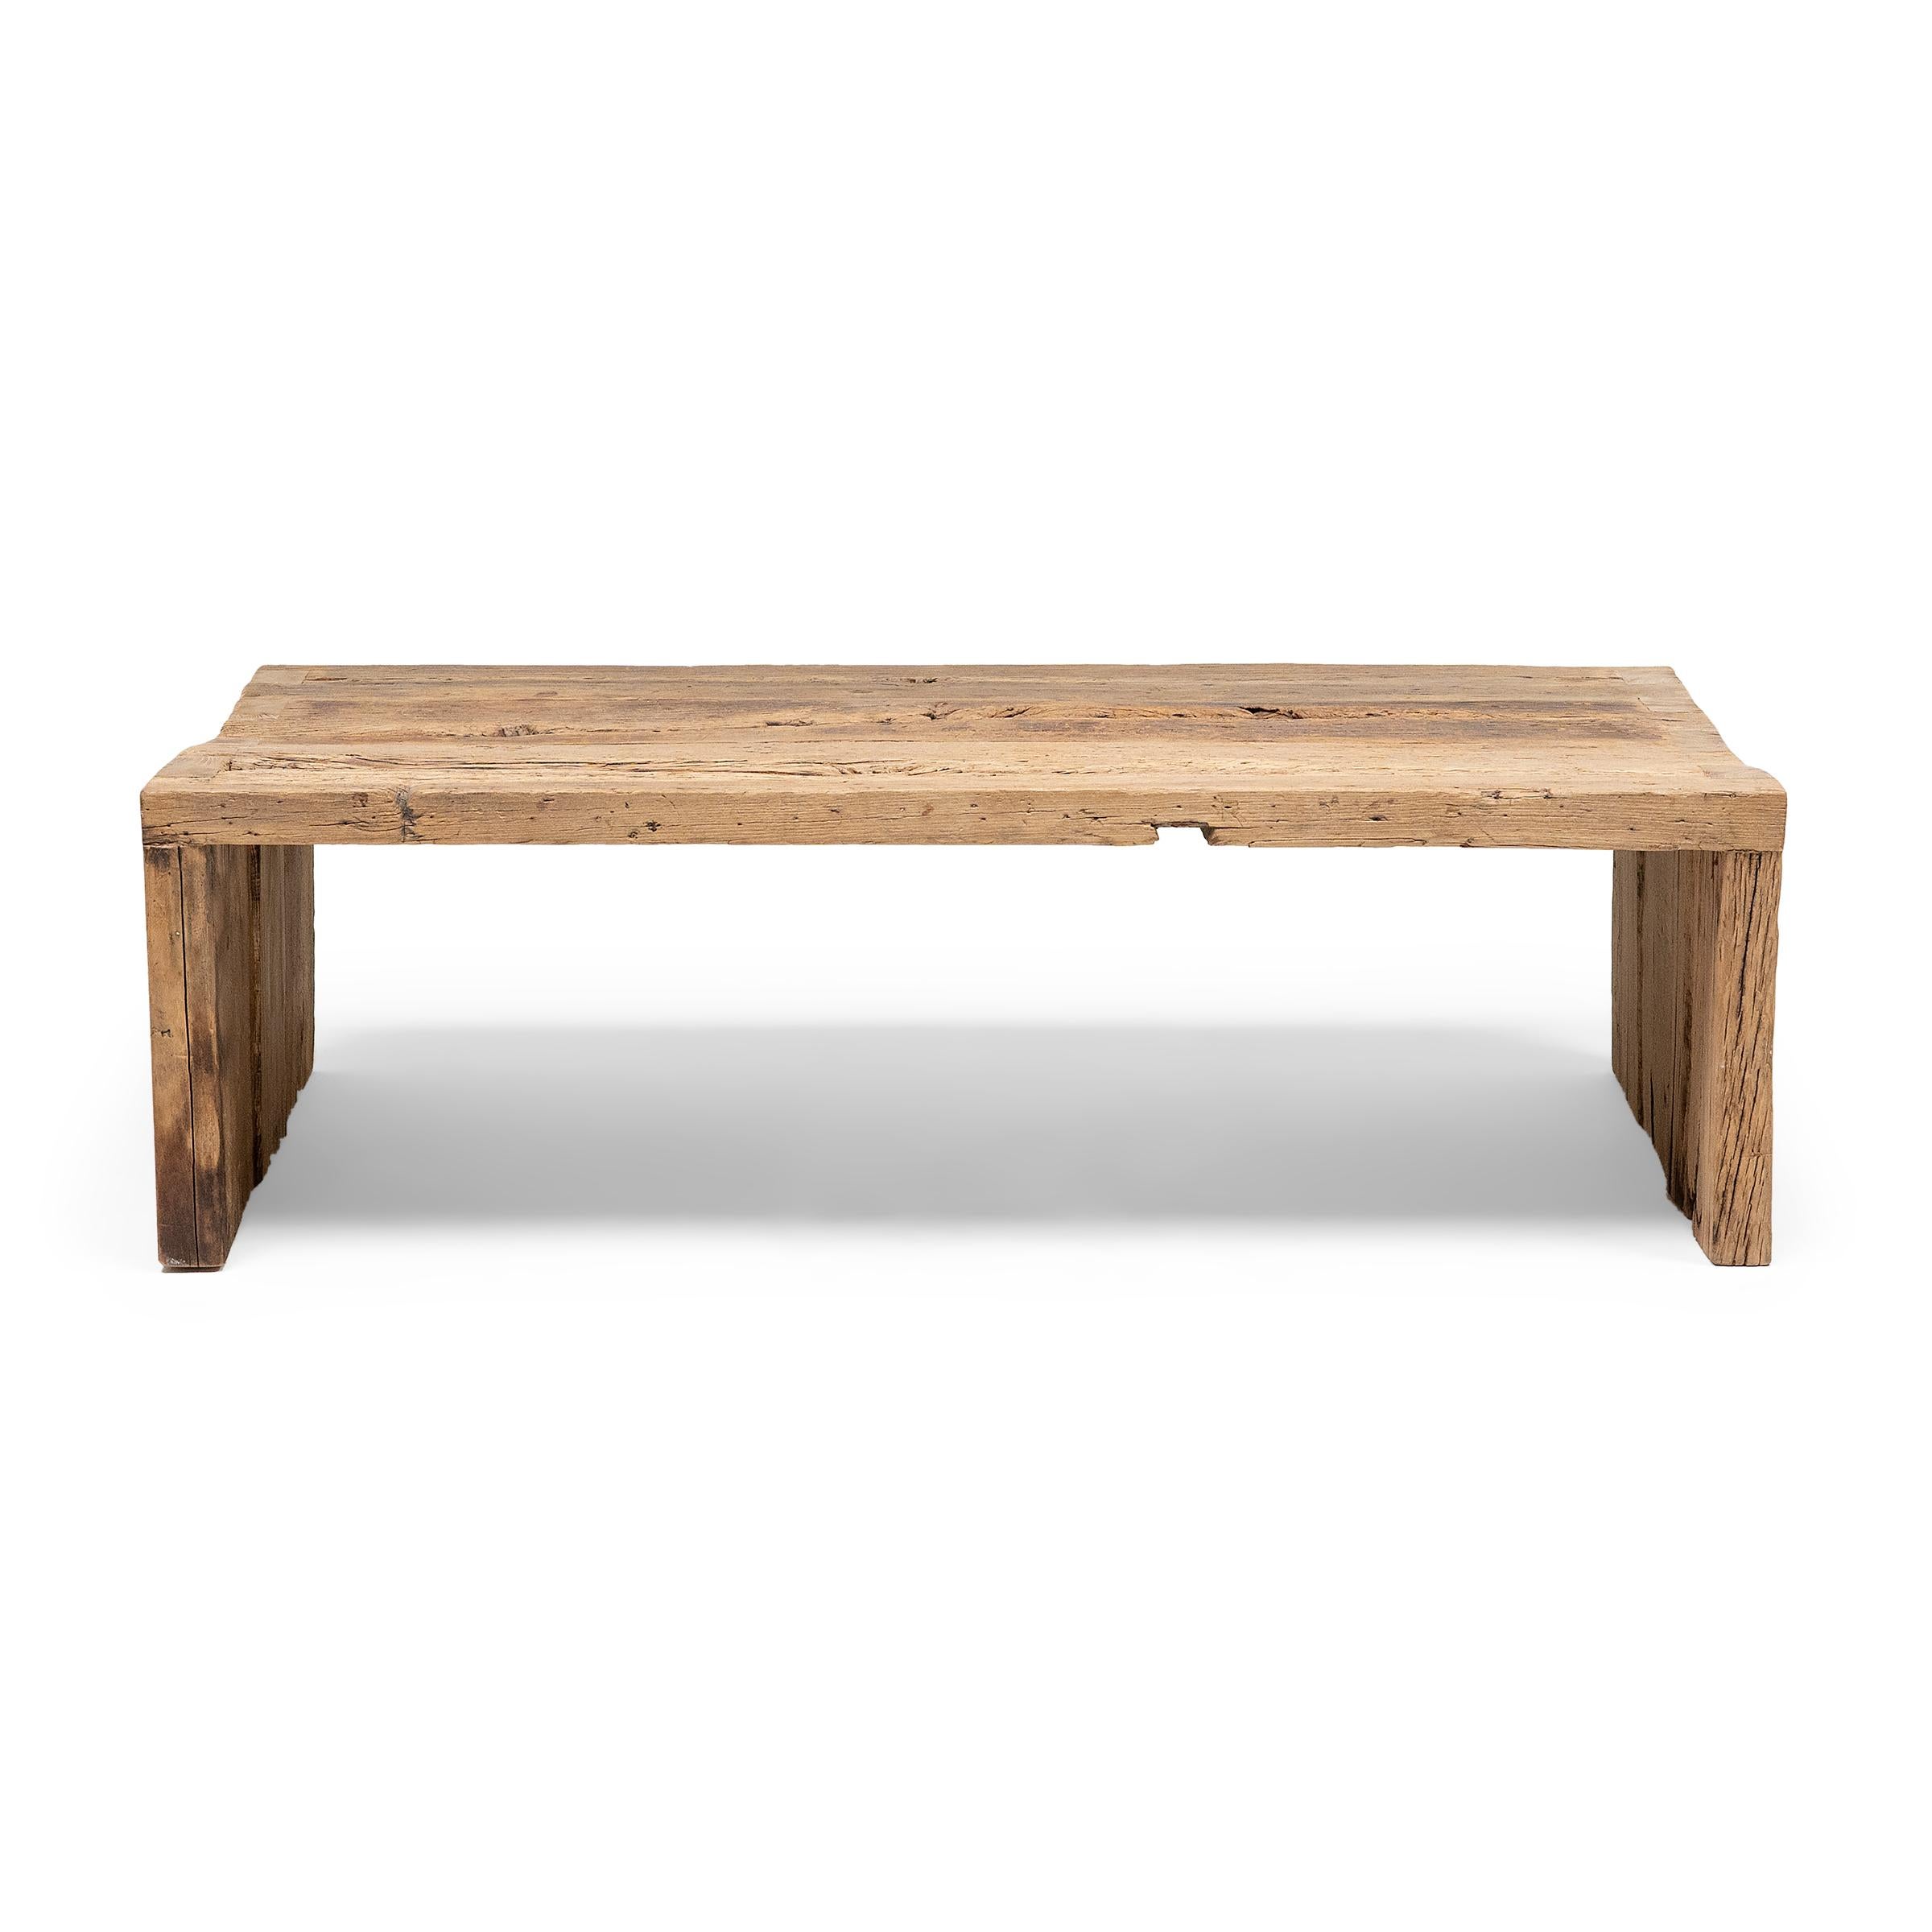 Cette table console moderne est une célébration du style wabi-sabi. Fabriquée en bois récupéré de l'architecture de la dynastie Qing, la table présente un design minimaliste en cascade avec des coins à queue d'aronde qui recréent les méthodes de